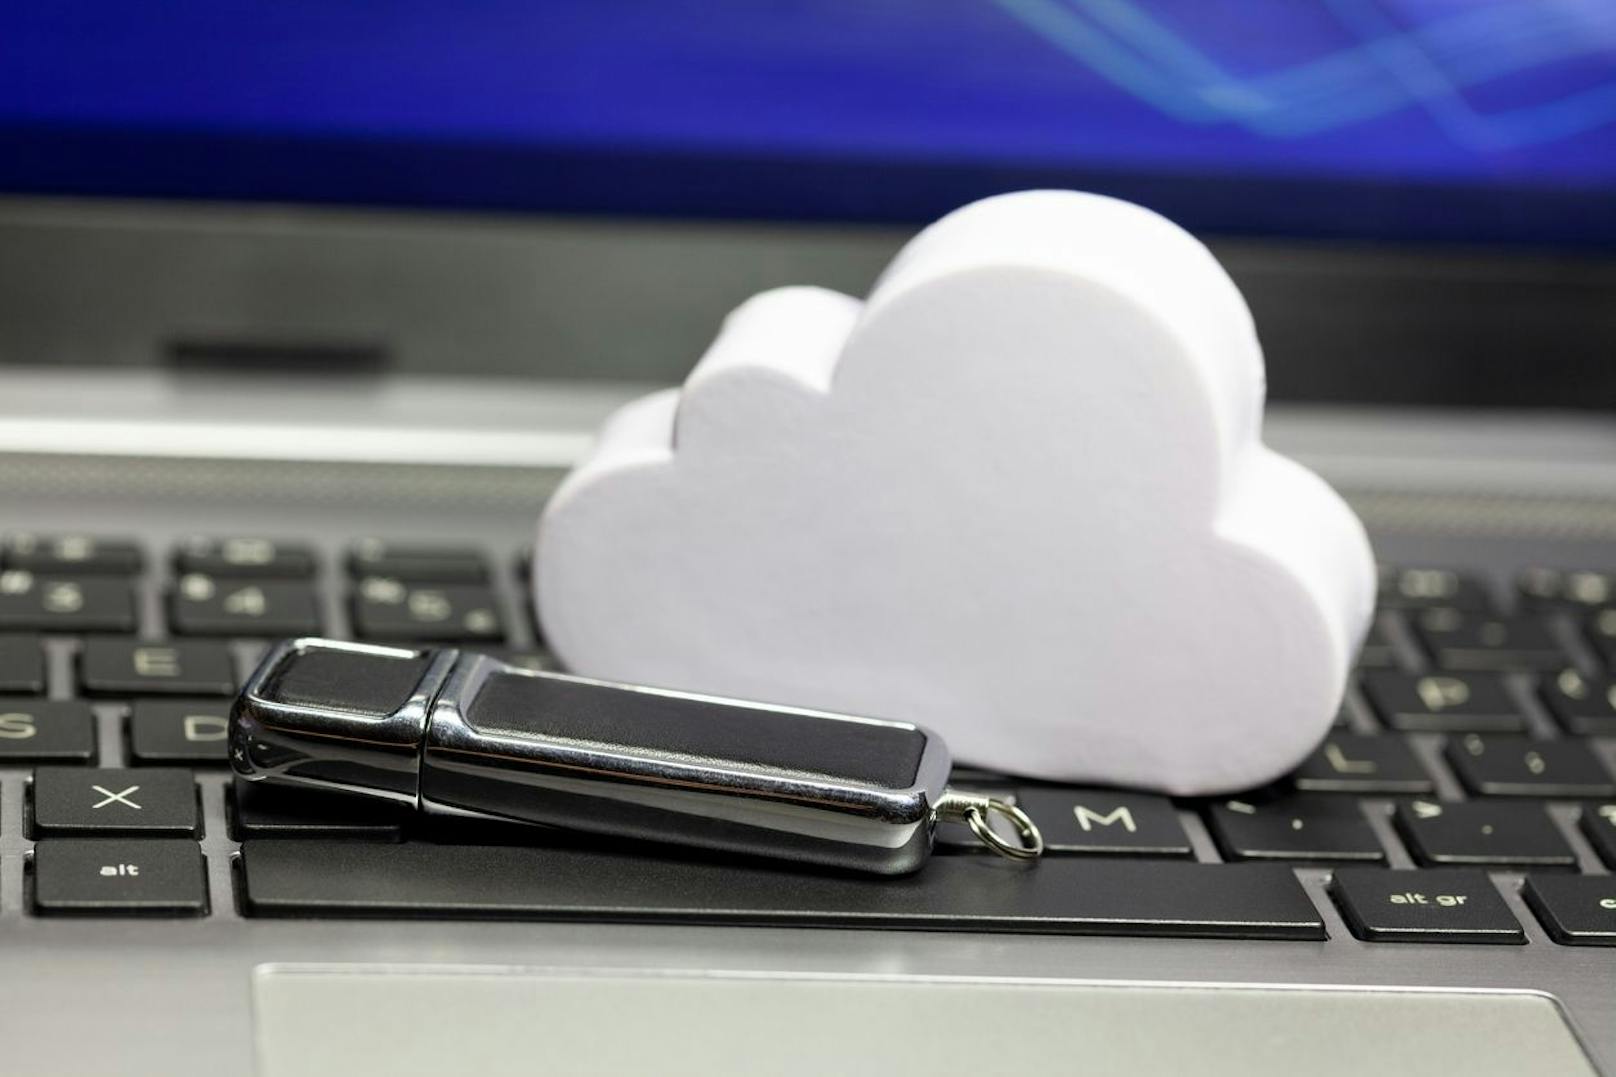 Nach dem Ausmisten solltest du sicherstellen, dass du Backups von deinen Sachen machst. Mittels einer Cloud, einem USB-Stick oder einer Festplatte bleiben deine wichtigsten Daten gesichert.